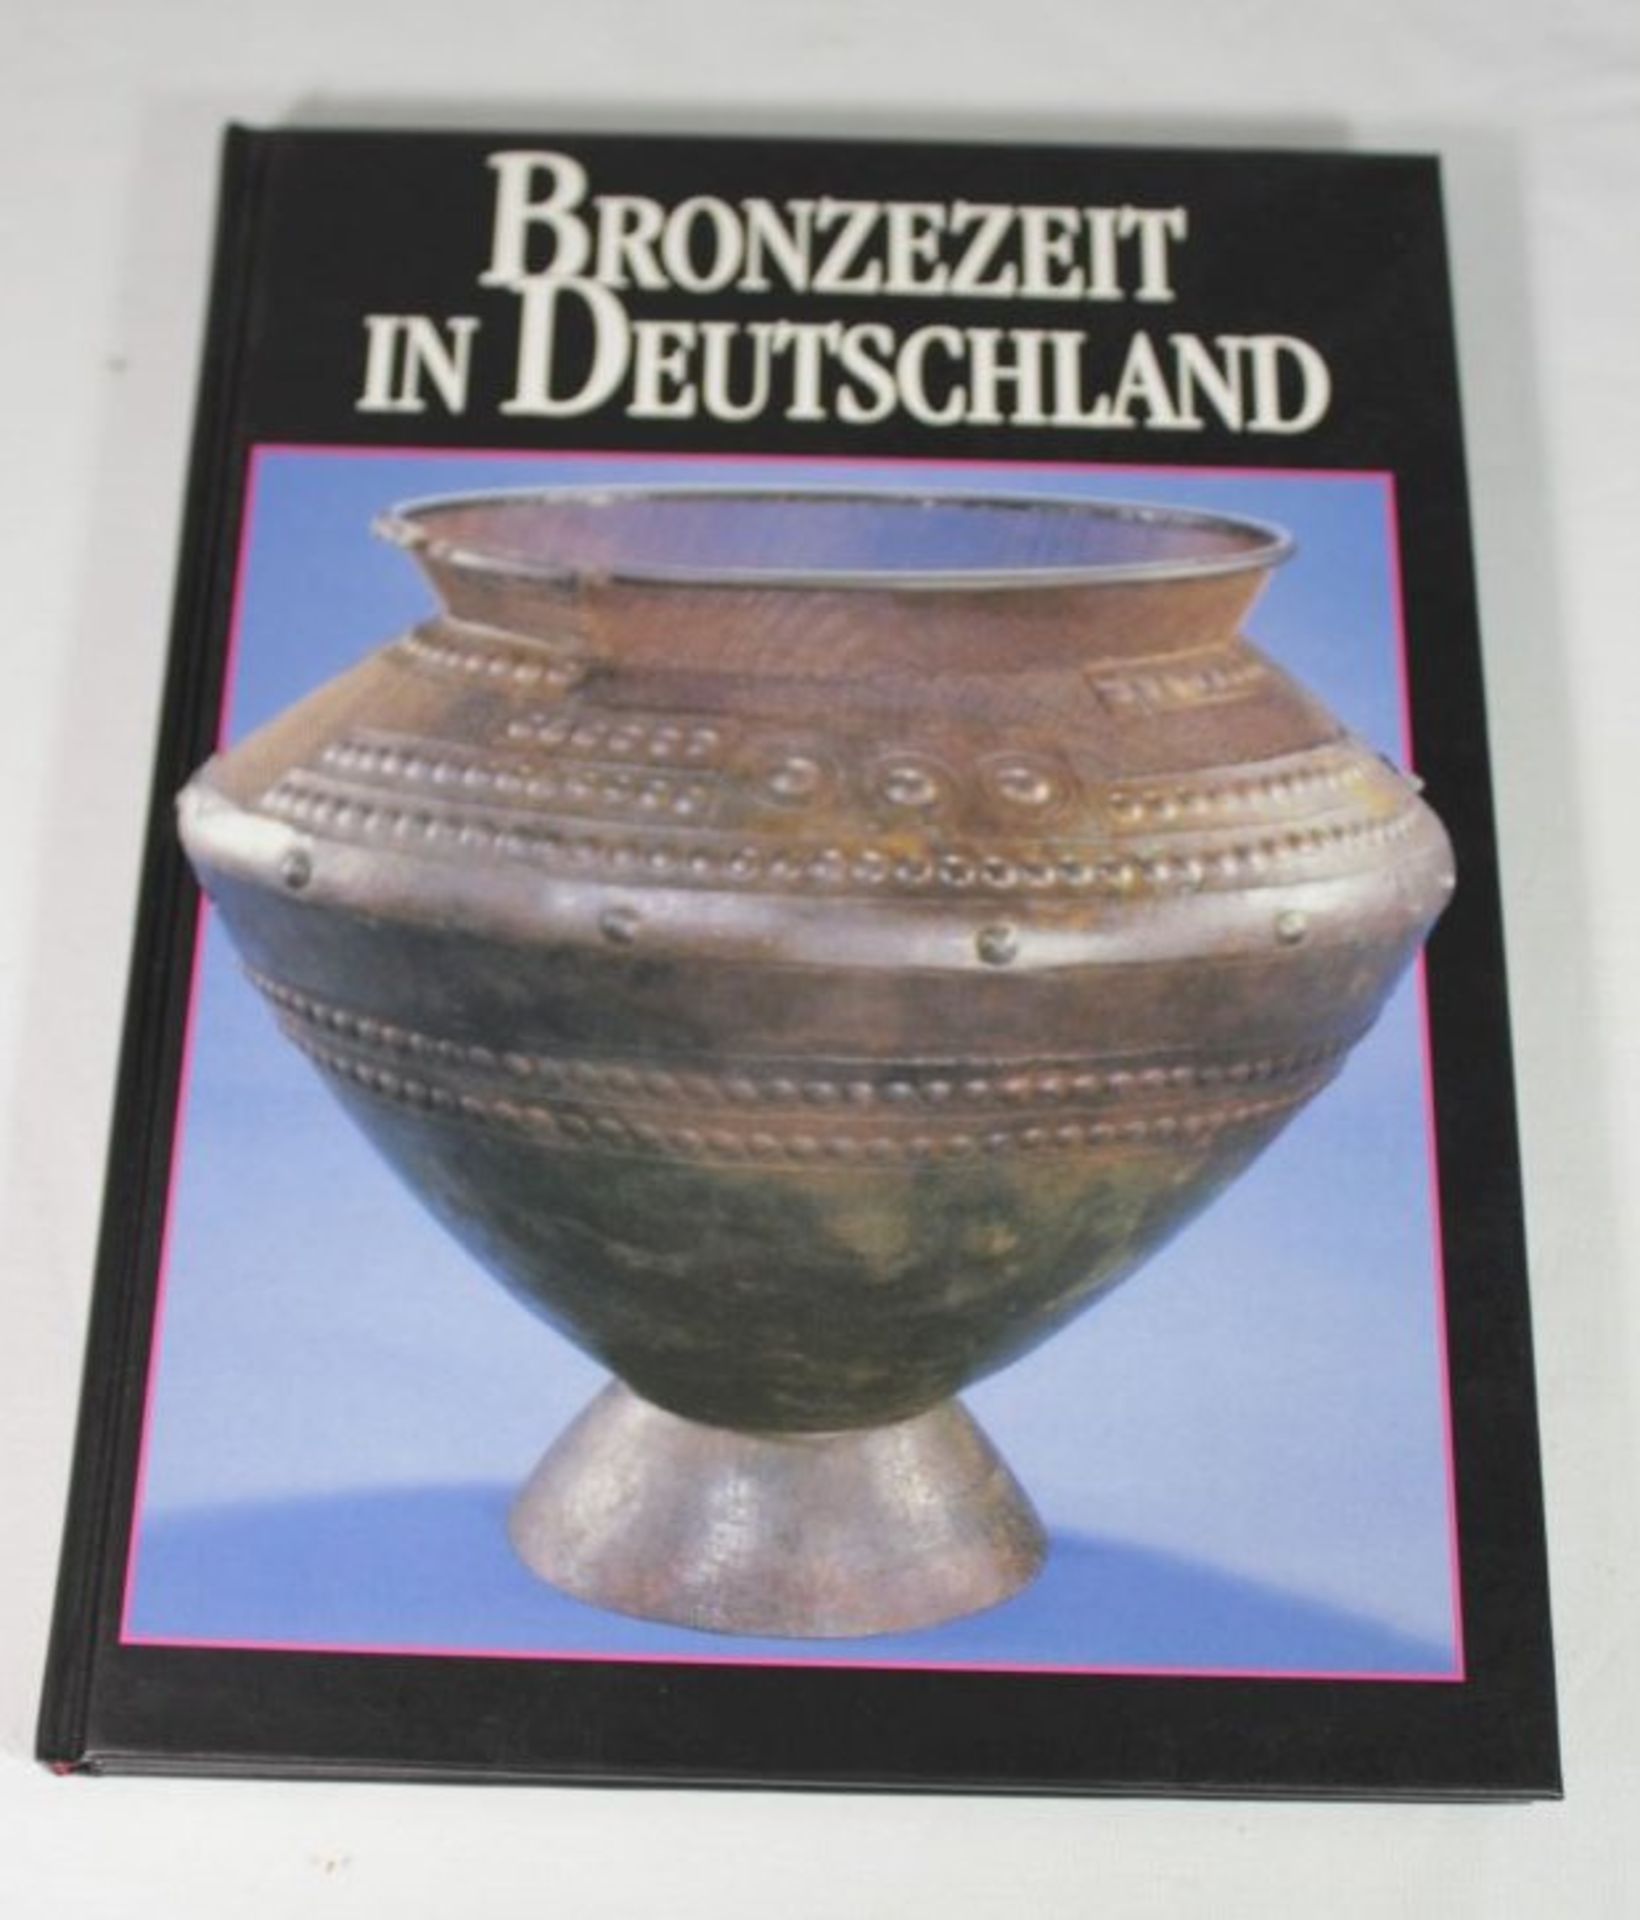 Jockenhövel/Kubach, Bronzezeit in Deutschland, 1994.